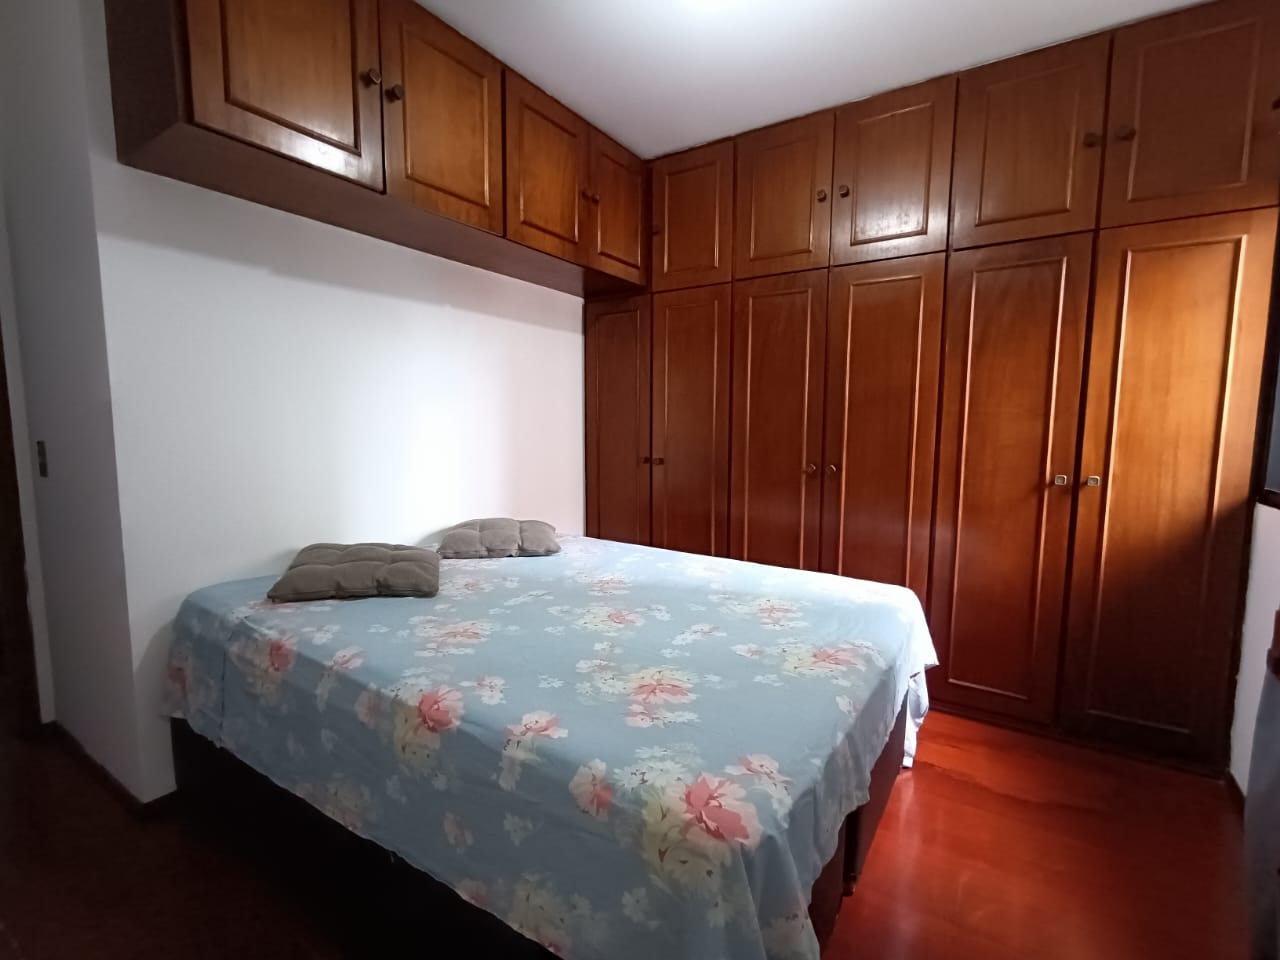 Foto do Imóvel - Lindo Apartamento 03 dorms na Ponta da Praia em Santos/SP